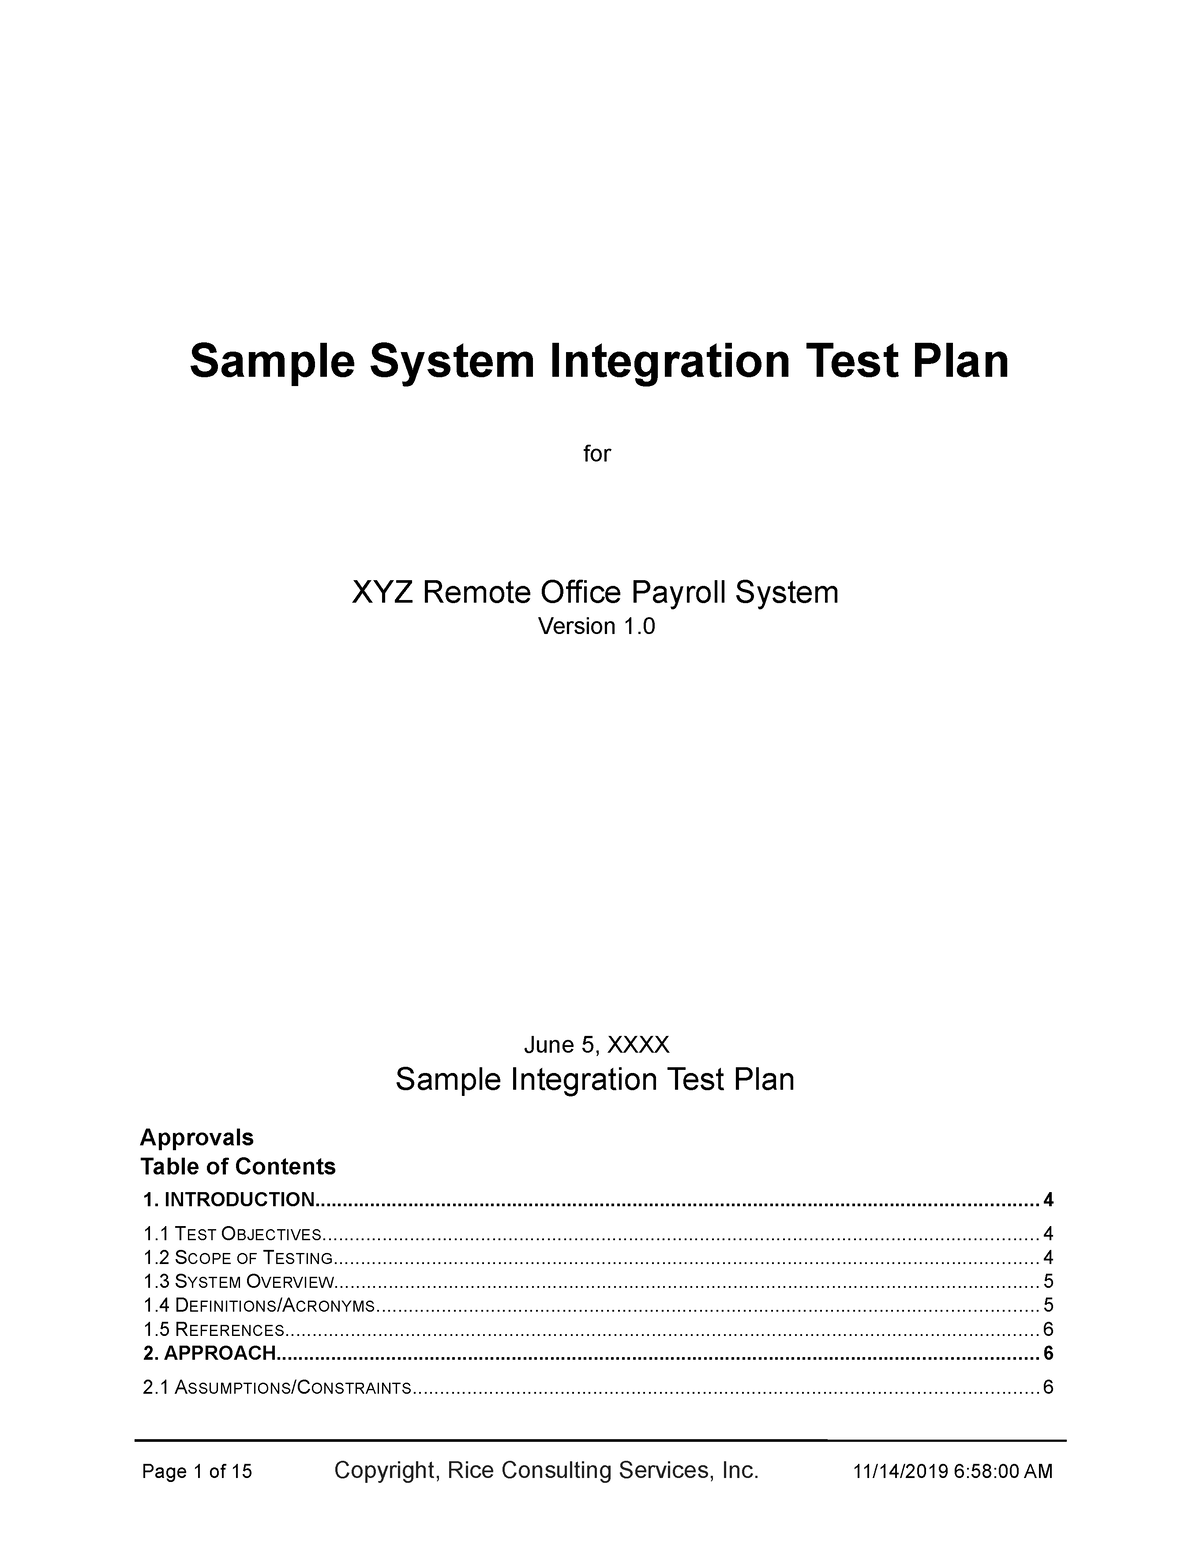 System integration testing template Sample System Integration Test